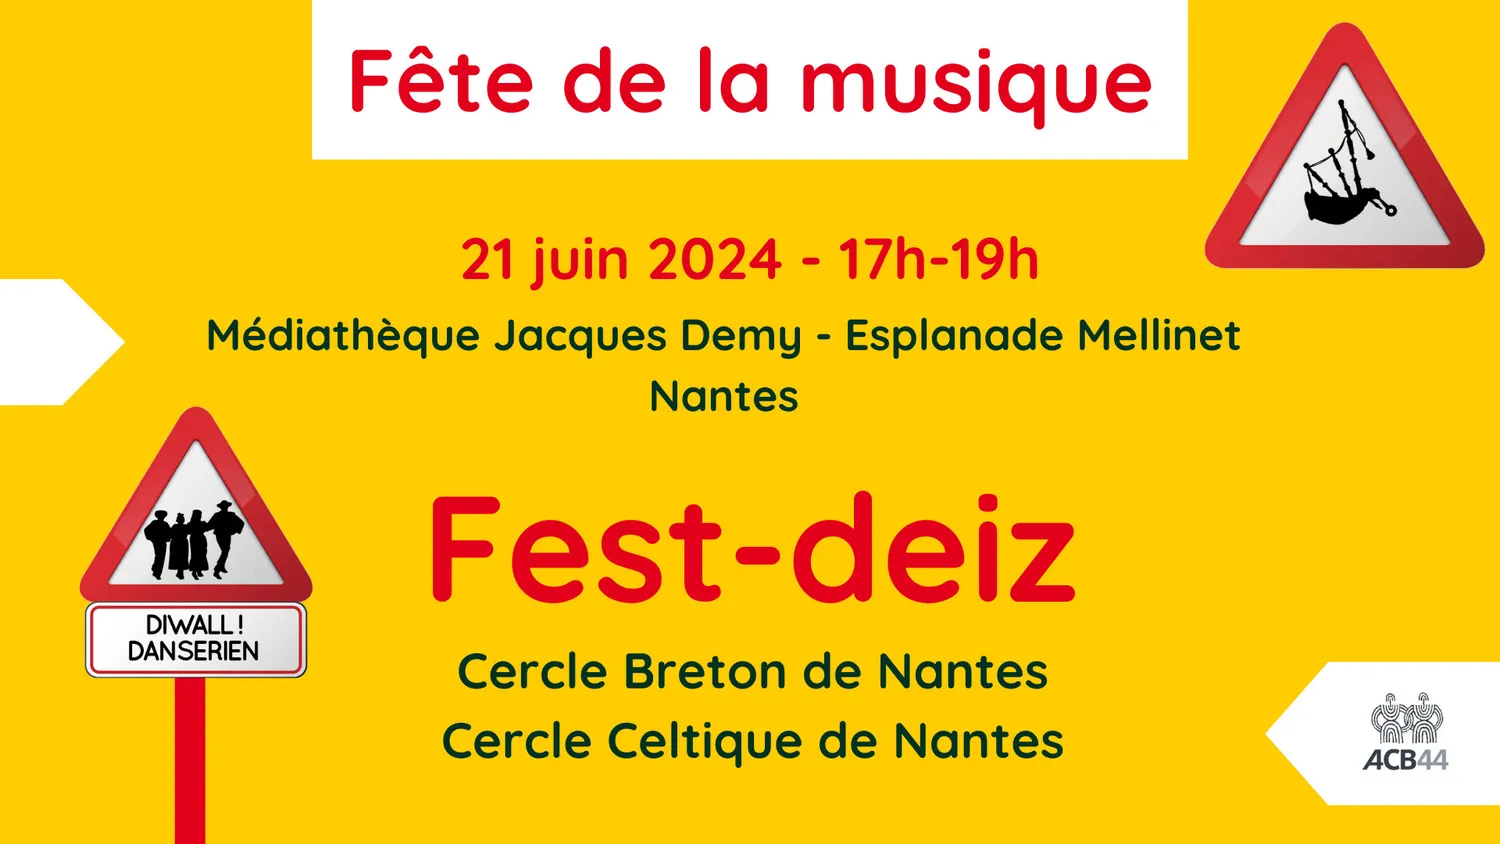 Image qui illustre: Fest-deiz de la Fête de la musique à Nantes - 0